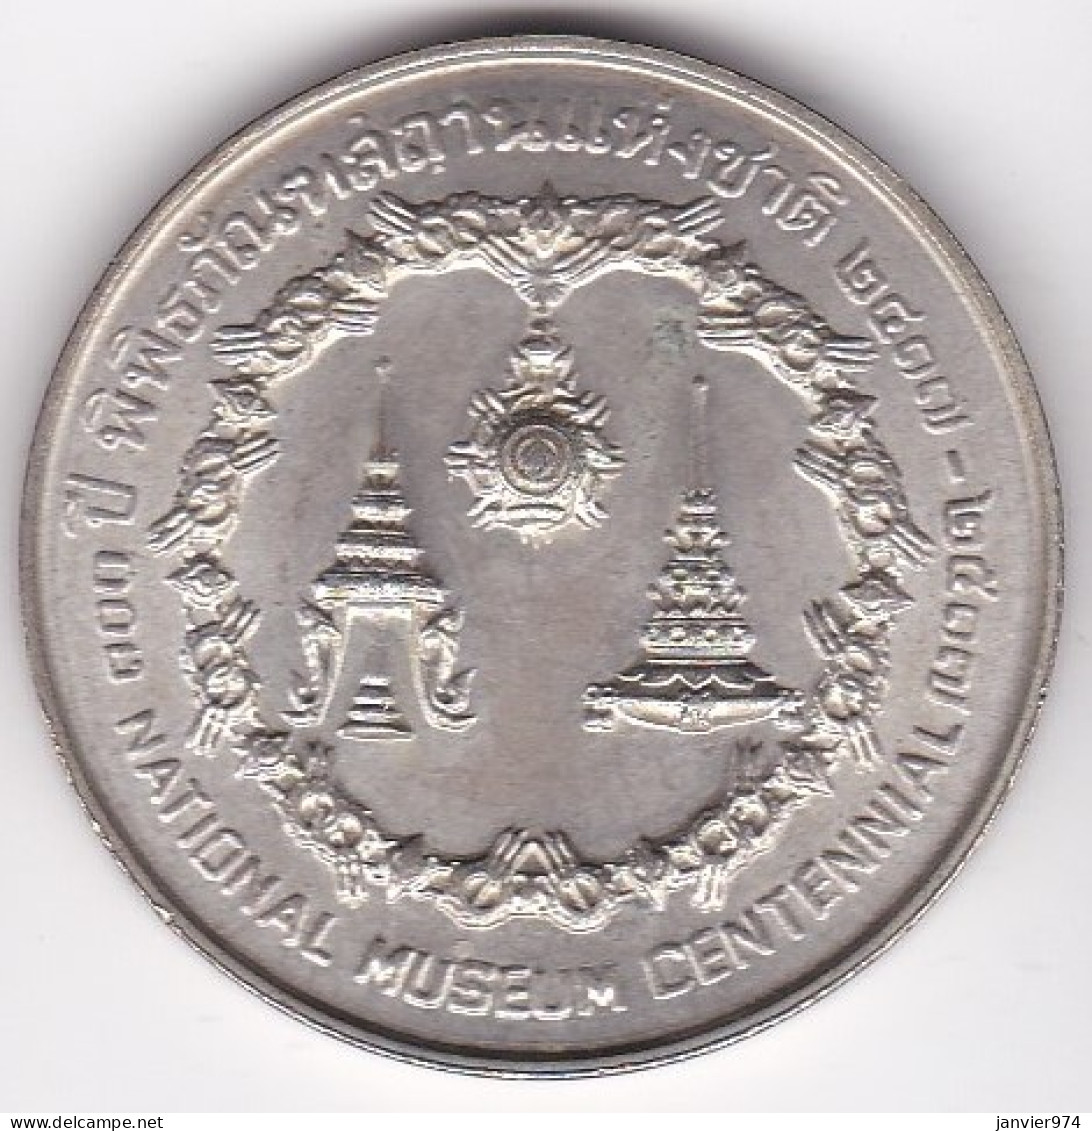 Thaïlande 50 Baht BE 2517 – 1974, Centenaire Du Musée National, En Argent , Y# 101 - Thailand